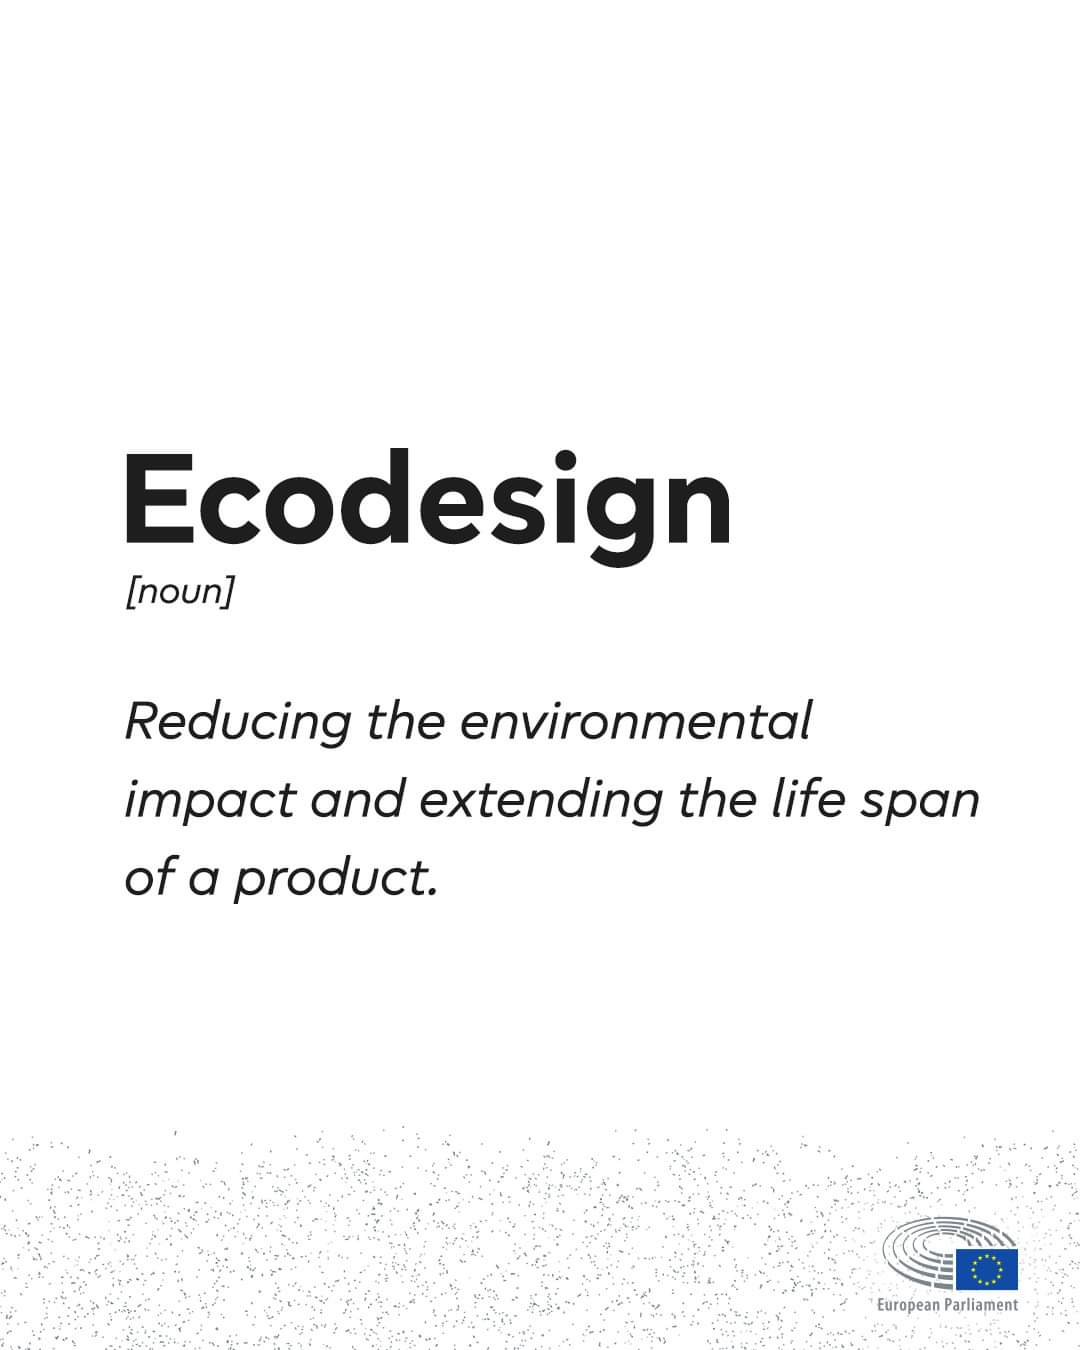 Ecodesign.jpg